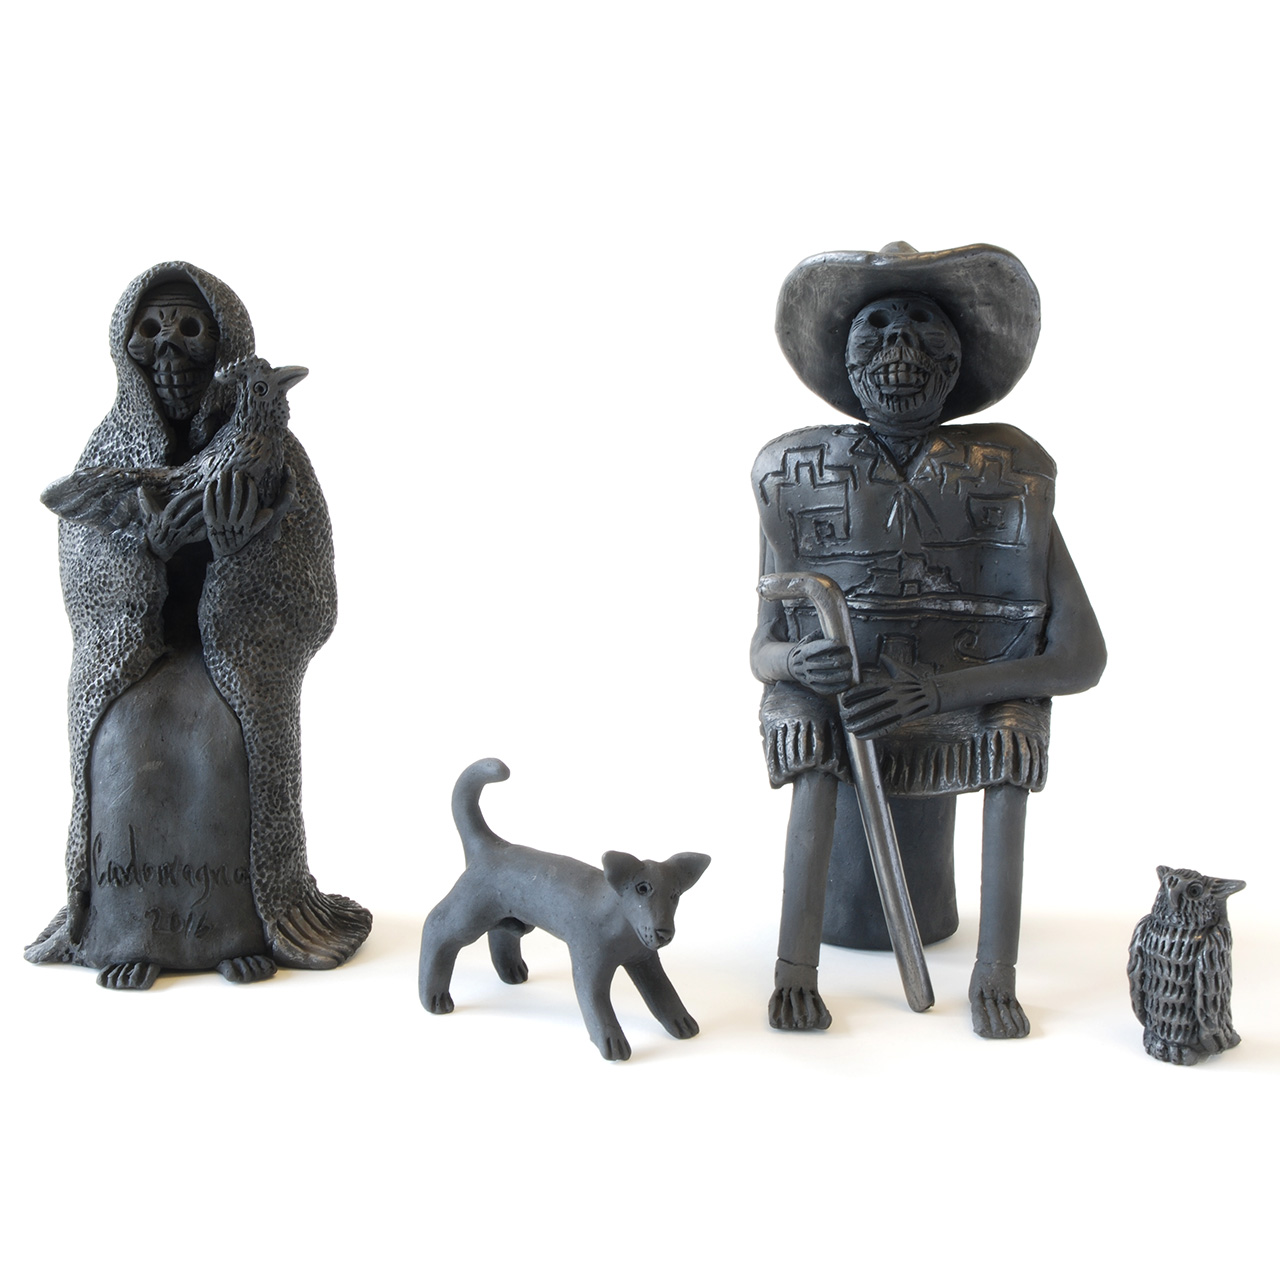 Objects, Borders Neighbors, El Pueblo. Carlomagno Pedro Martinez, Los Abuelos, 2017, Sculptures, Craft in America